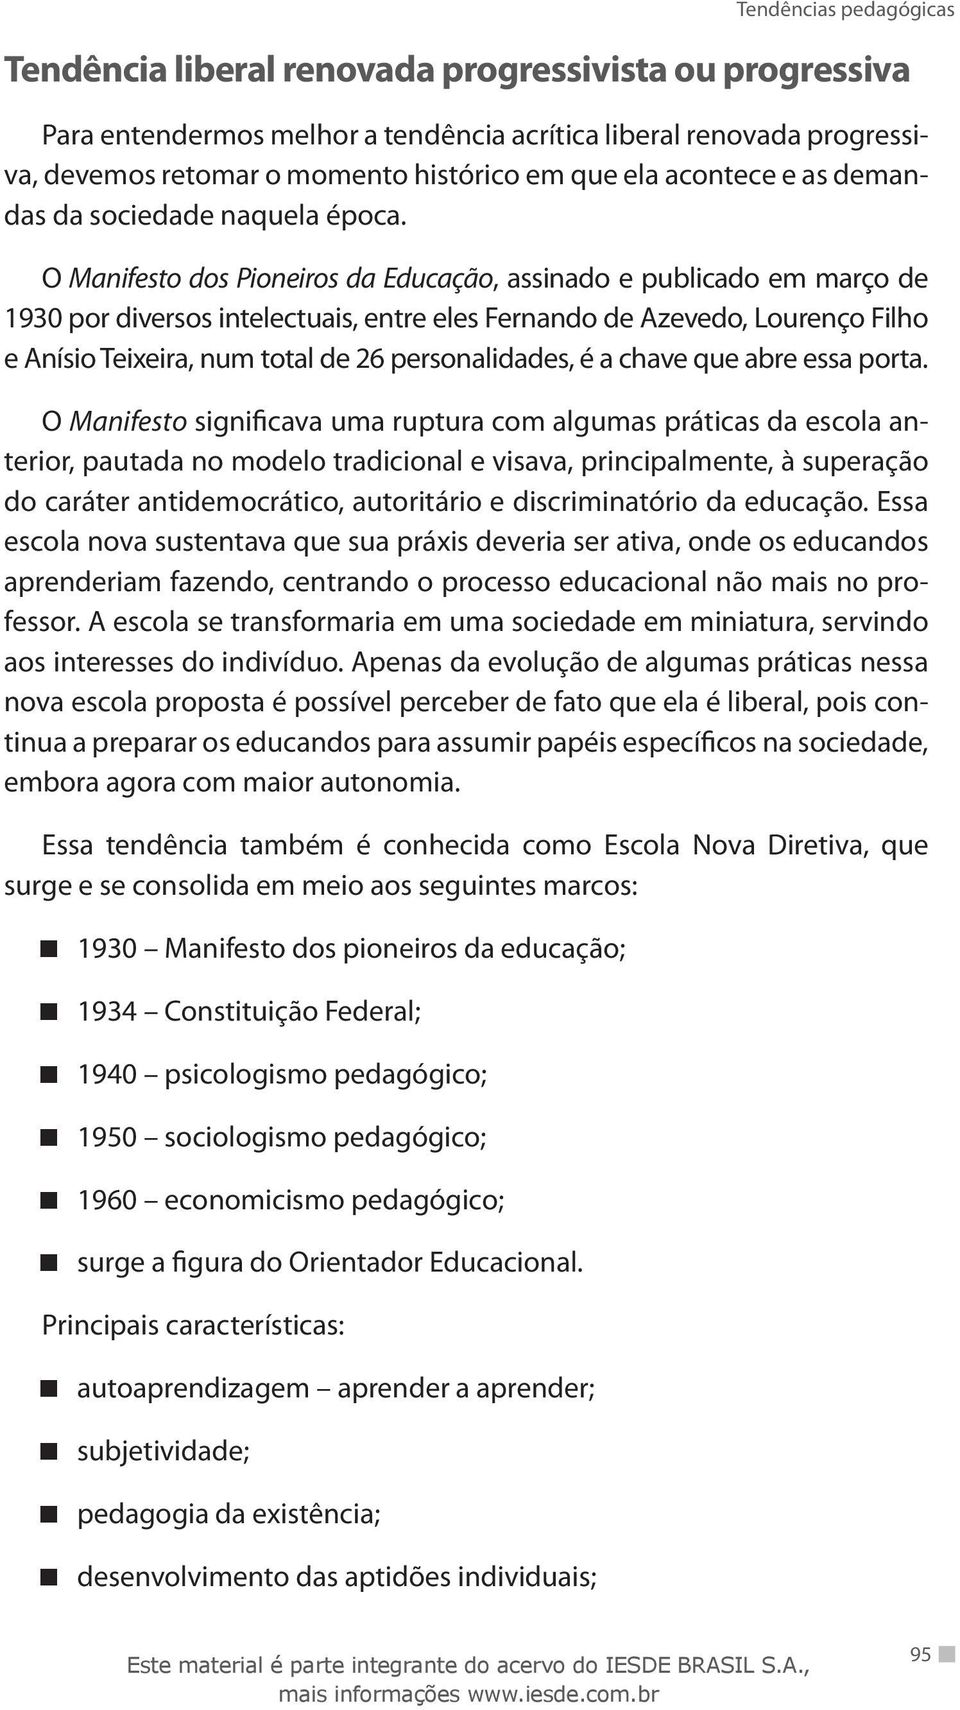 O Manifesto dos Pioneiros da Educação, assinado e publicado em março de 1930 por diversos intelectuais, entre eles Fernando de Azevedo, Lourenço Filho e Anísio Teixeira, num total de 26